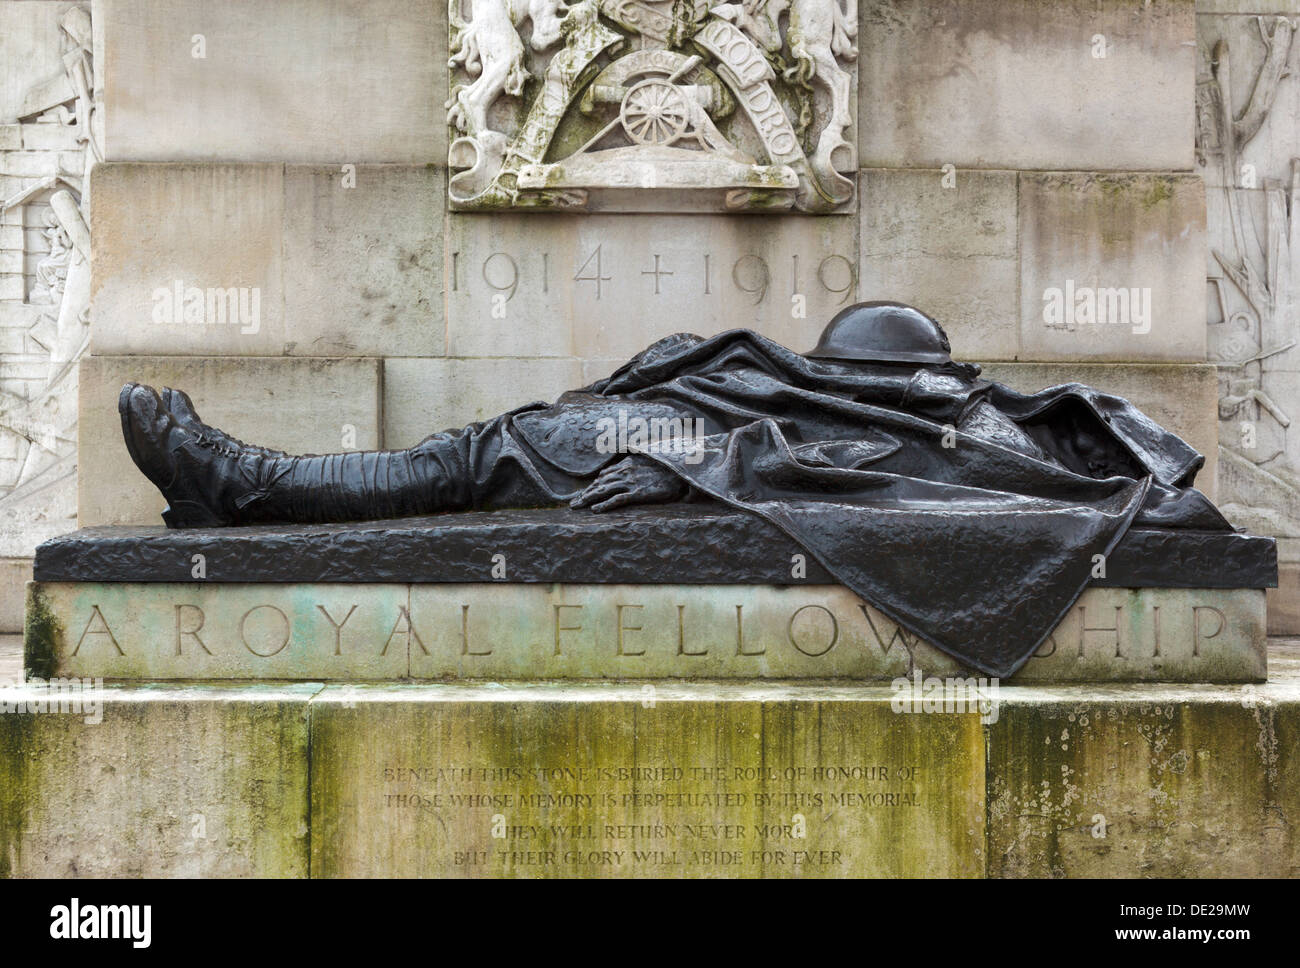 Fallen Artilleryman statue - First World War Royal Artillery Memorial Hyde Park Corner London England UK Stock Photo